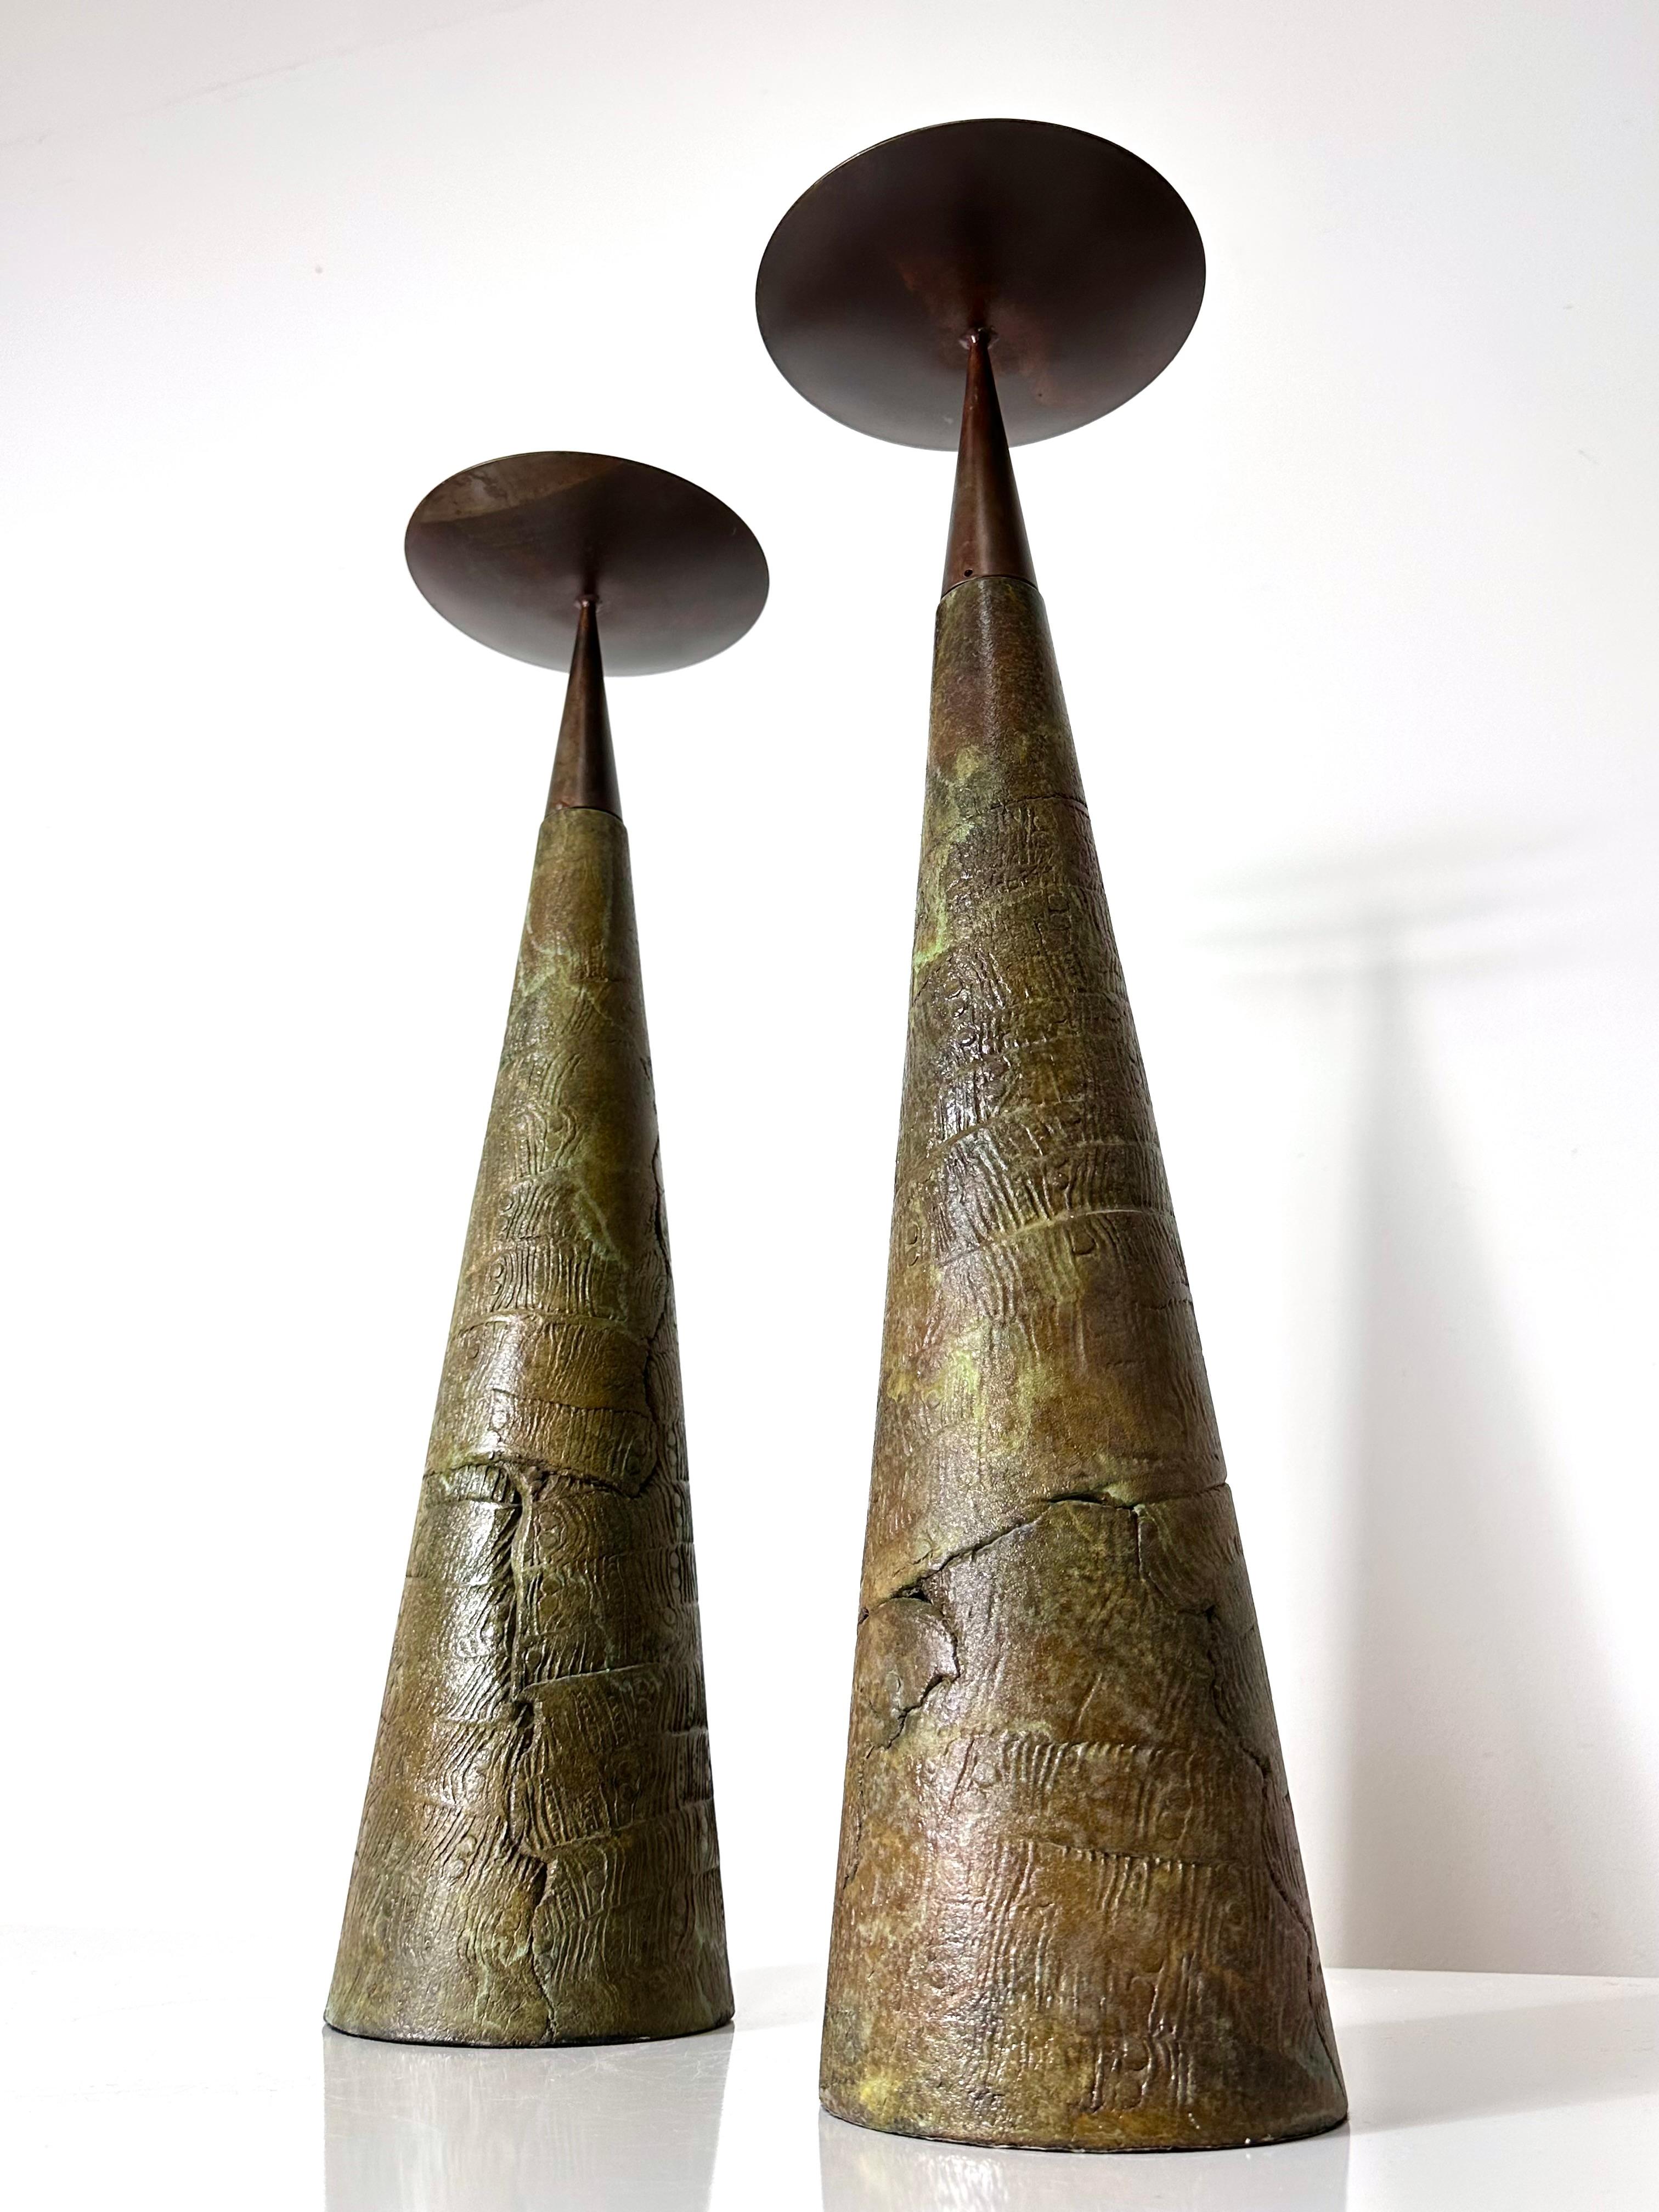 Fin du 20e siècle Paire monumentale de chandeliers coniques à pilier en céramique et bronze de Tony Evans, années 1980